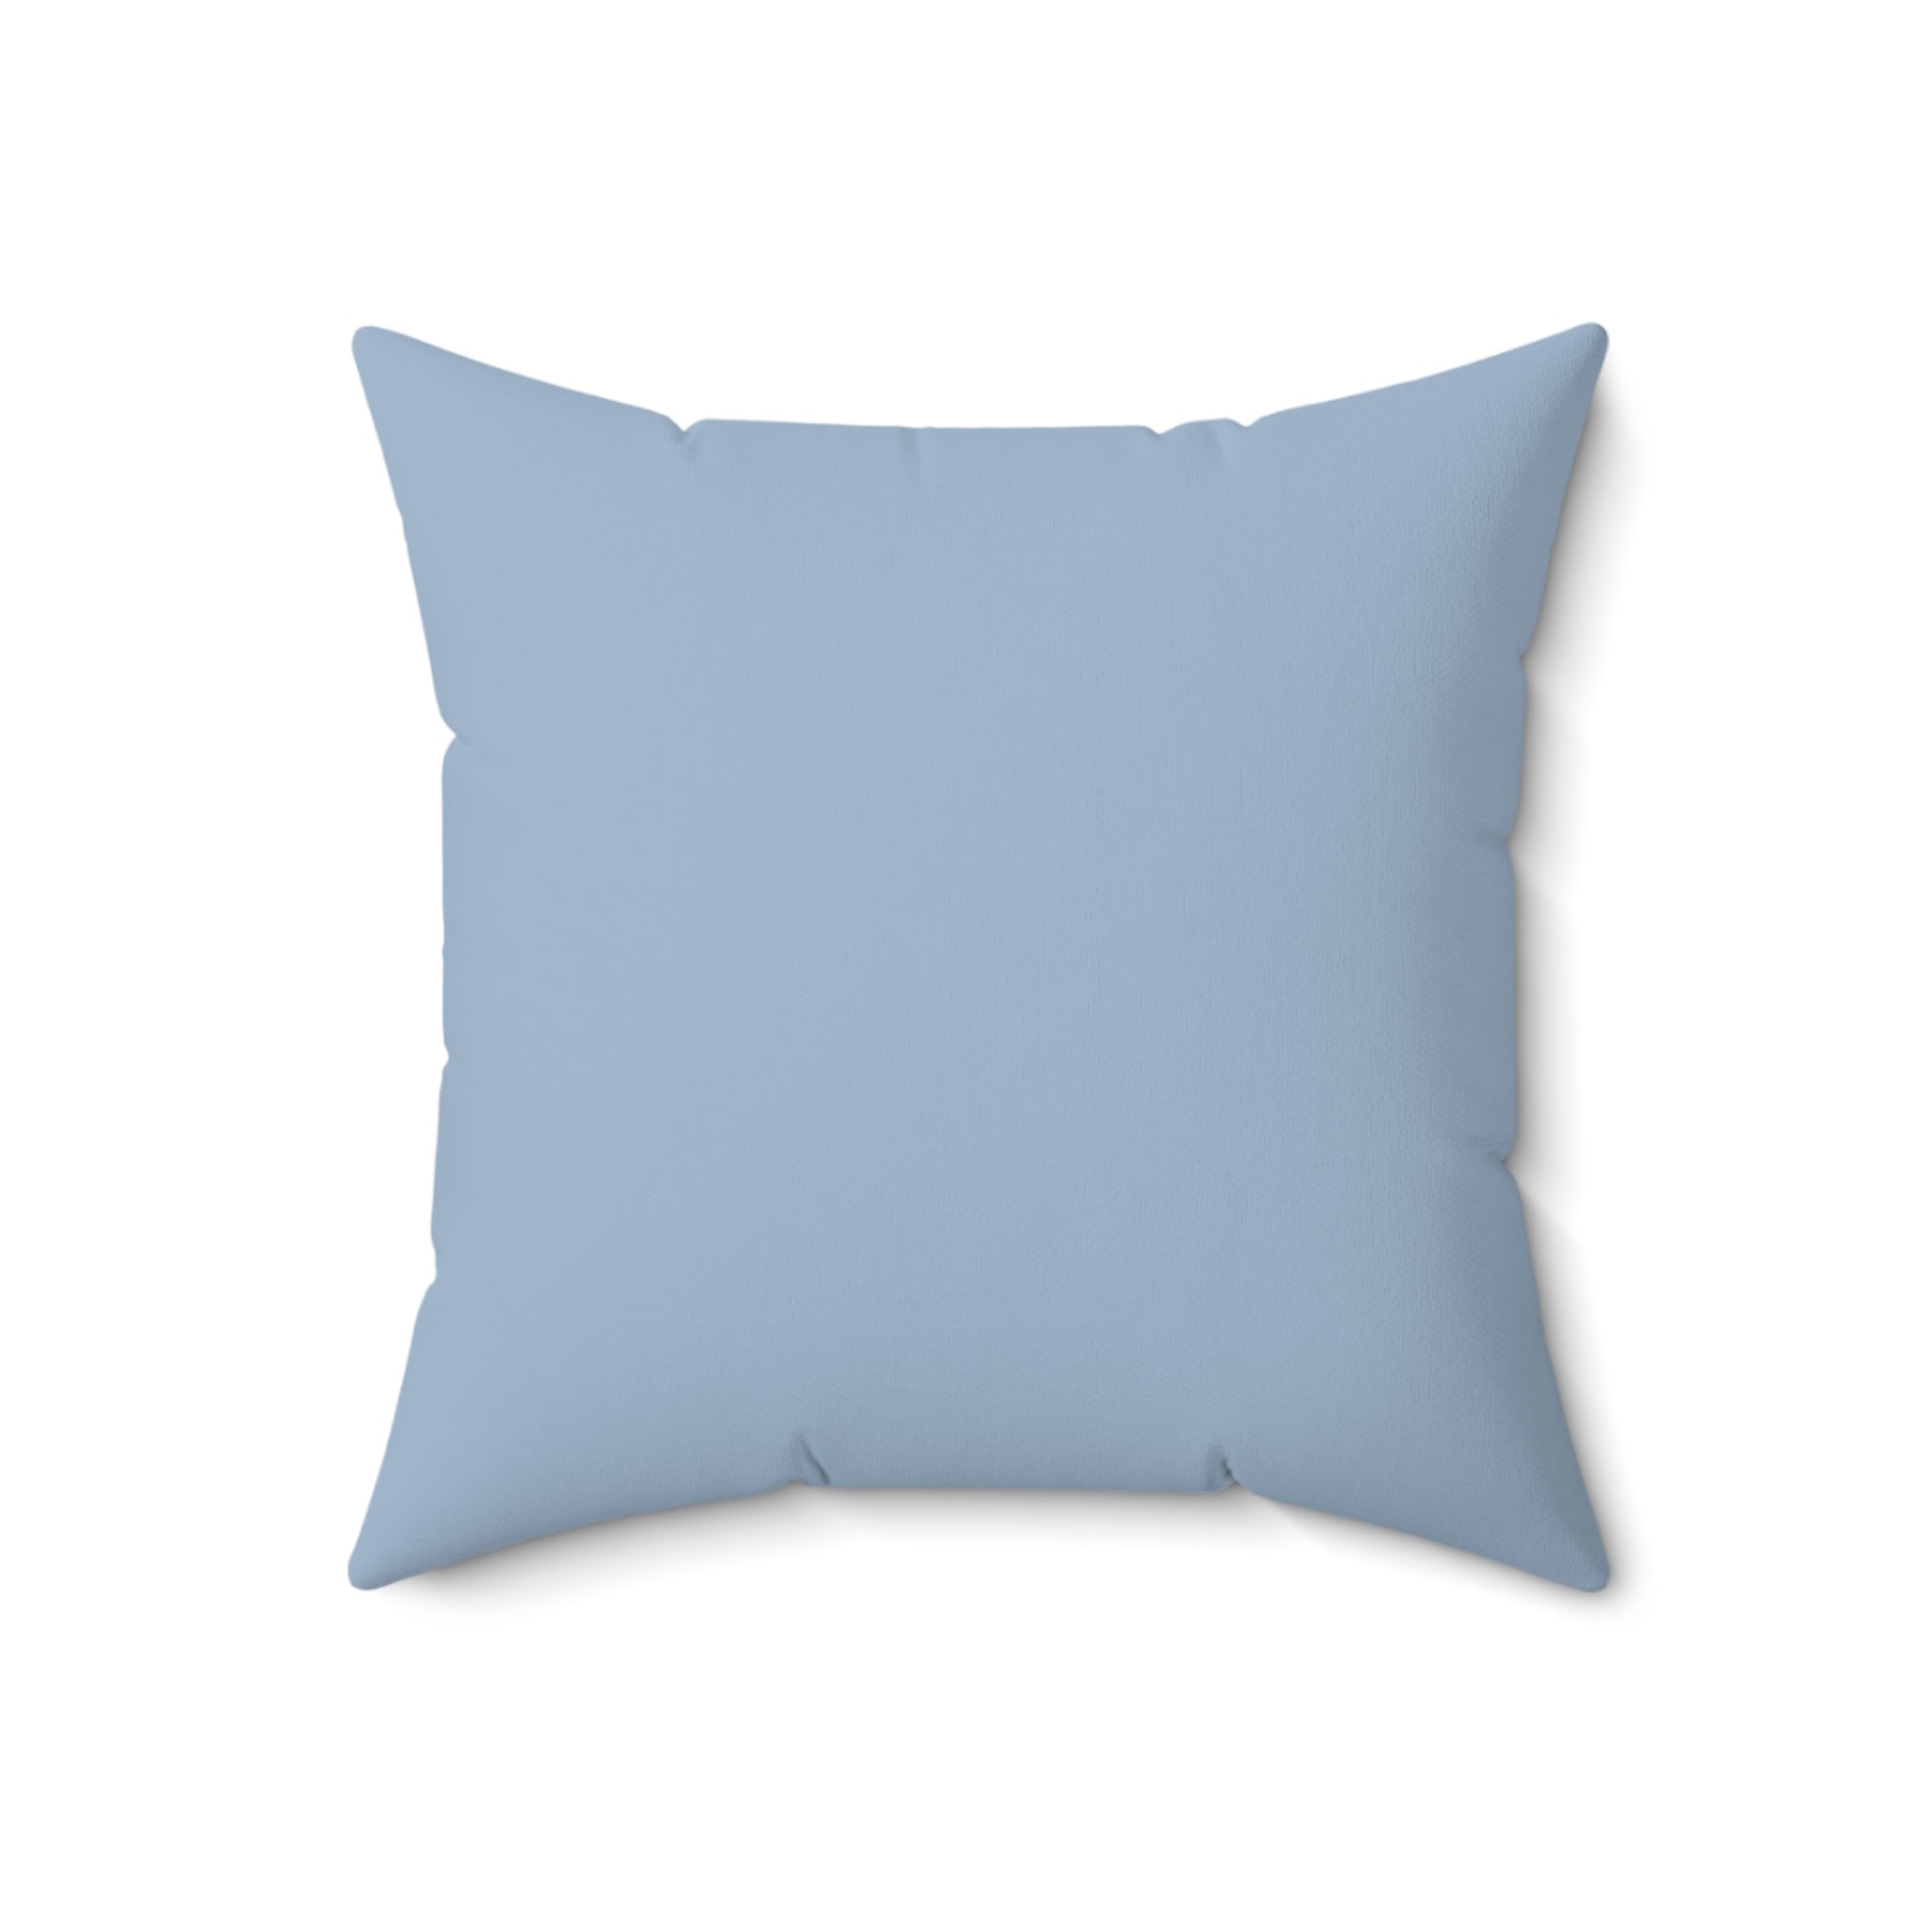 Faux Suede Pillow - Blue Mist